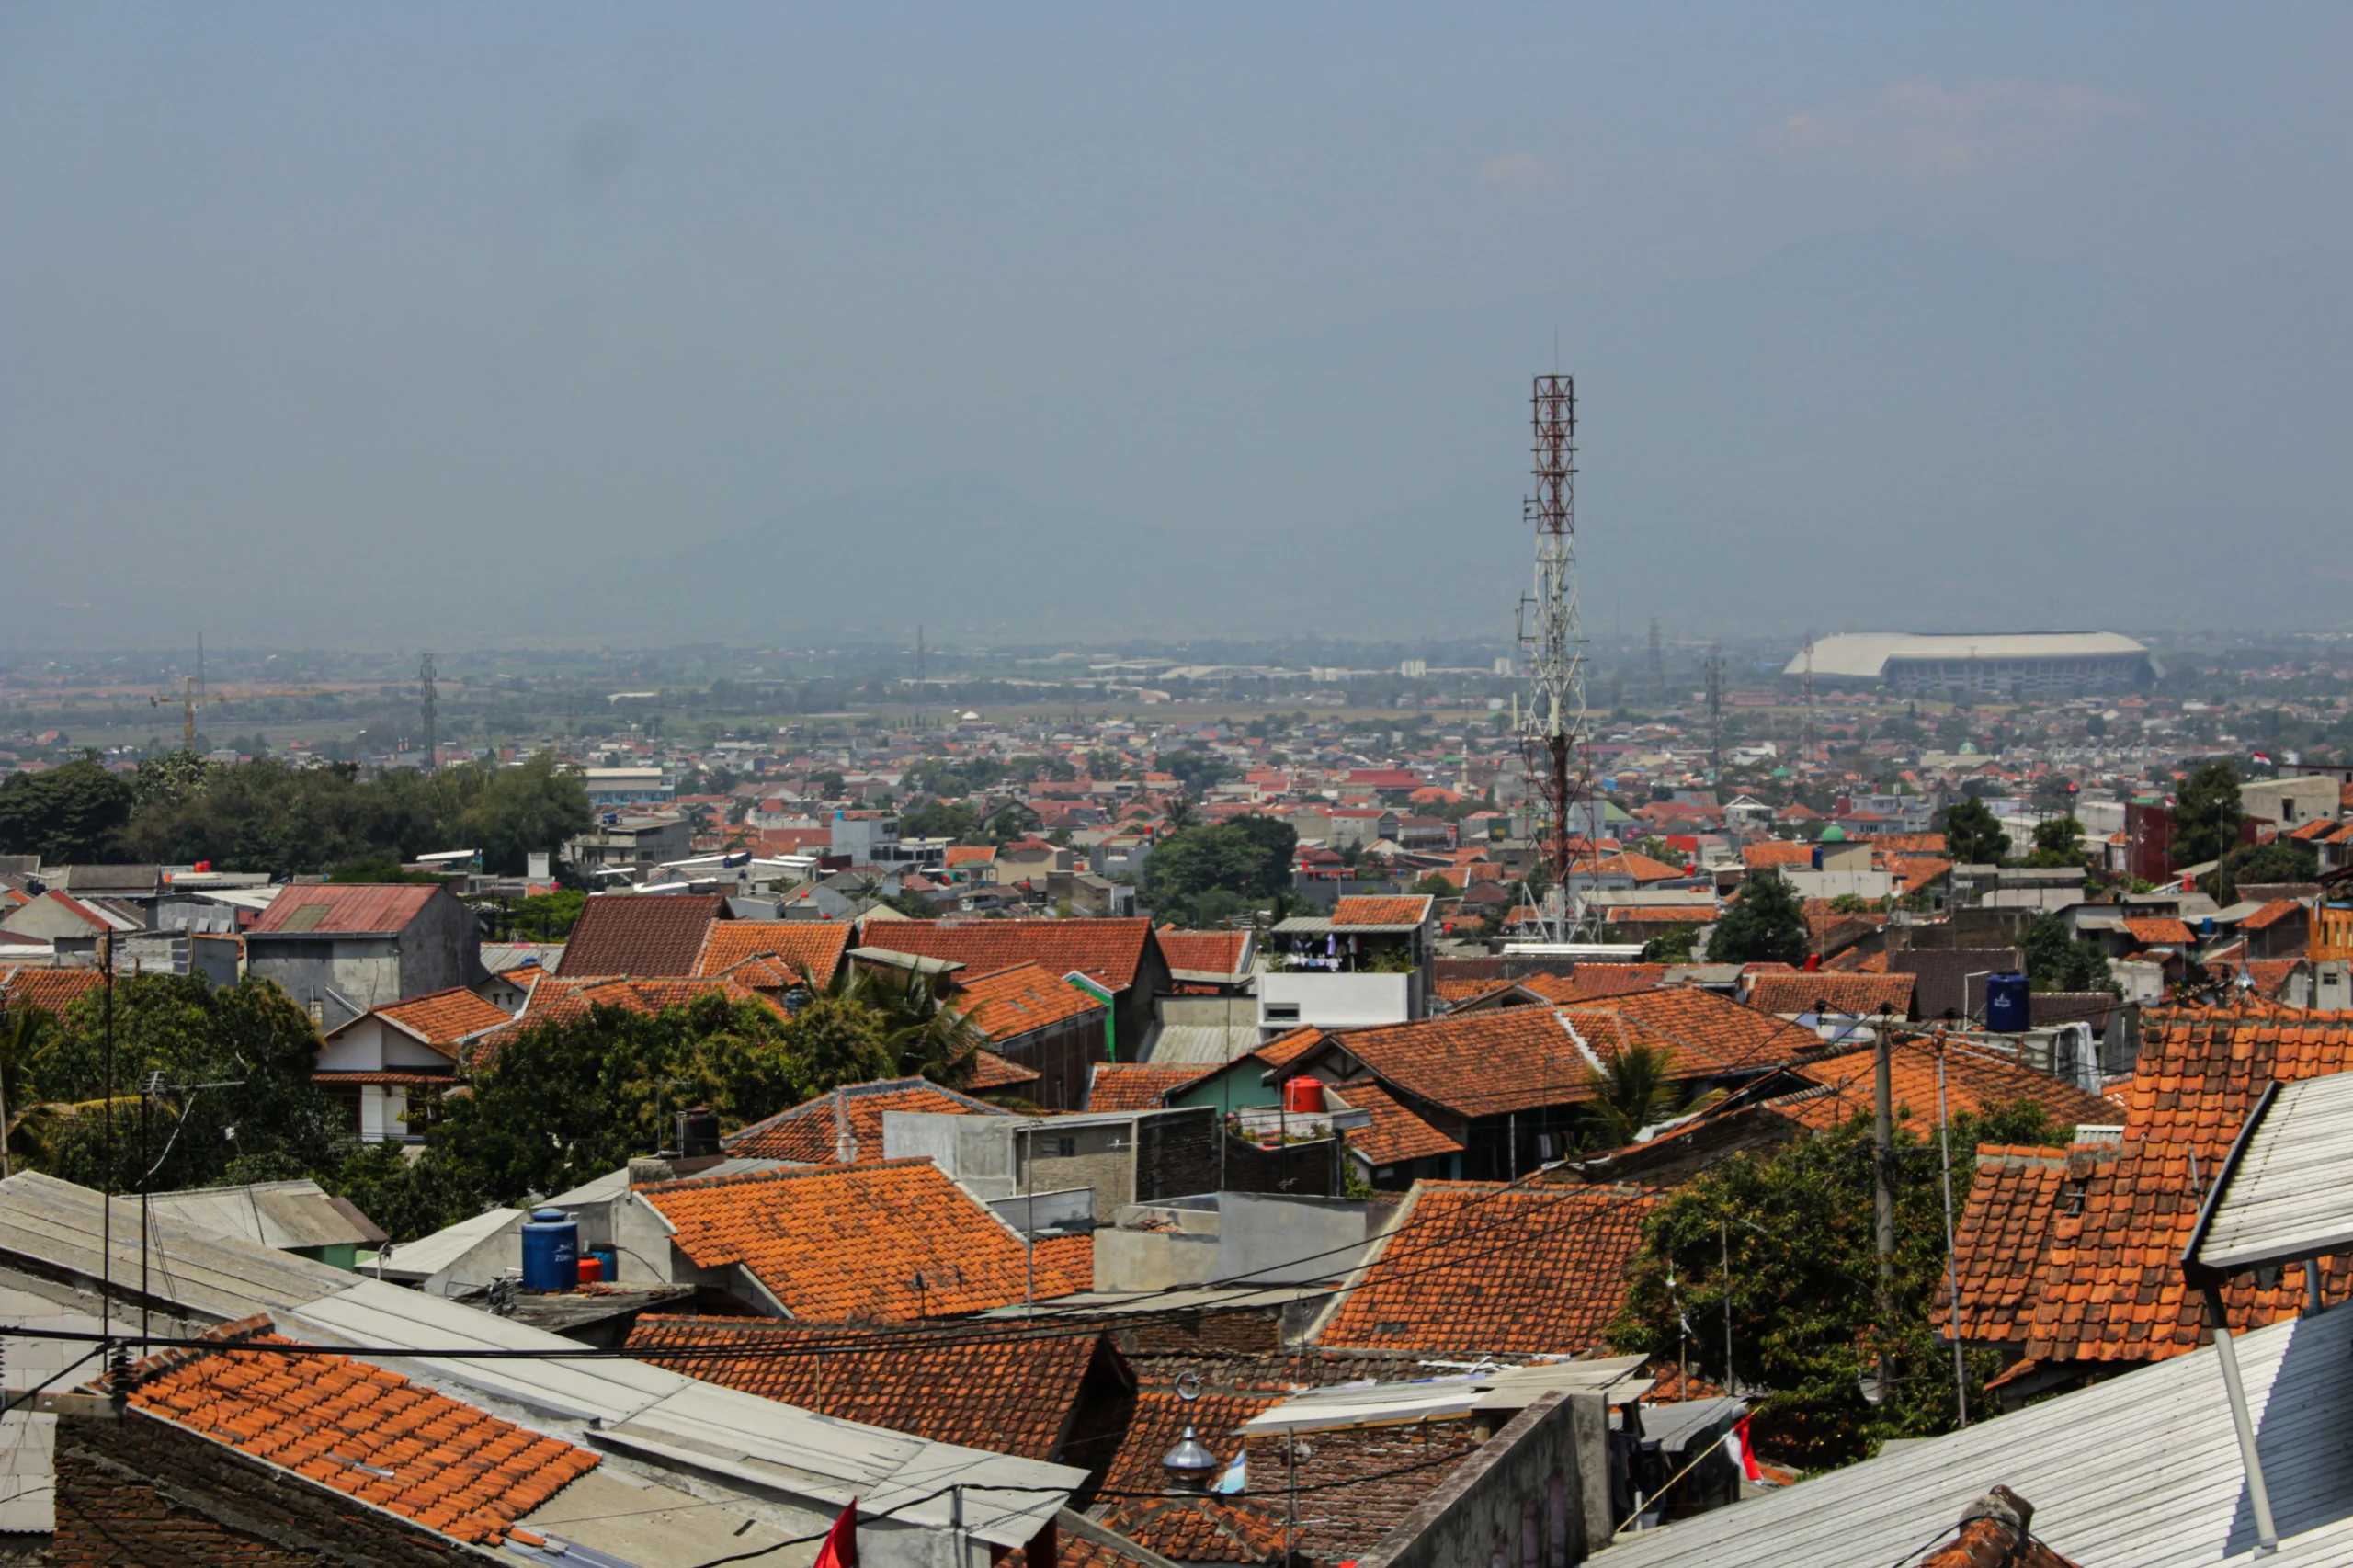 Foto Ilustrasi Pemukiman Kota Bandung (Pandu Muslim / JE)